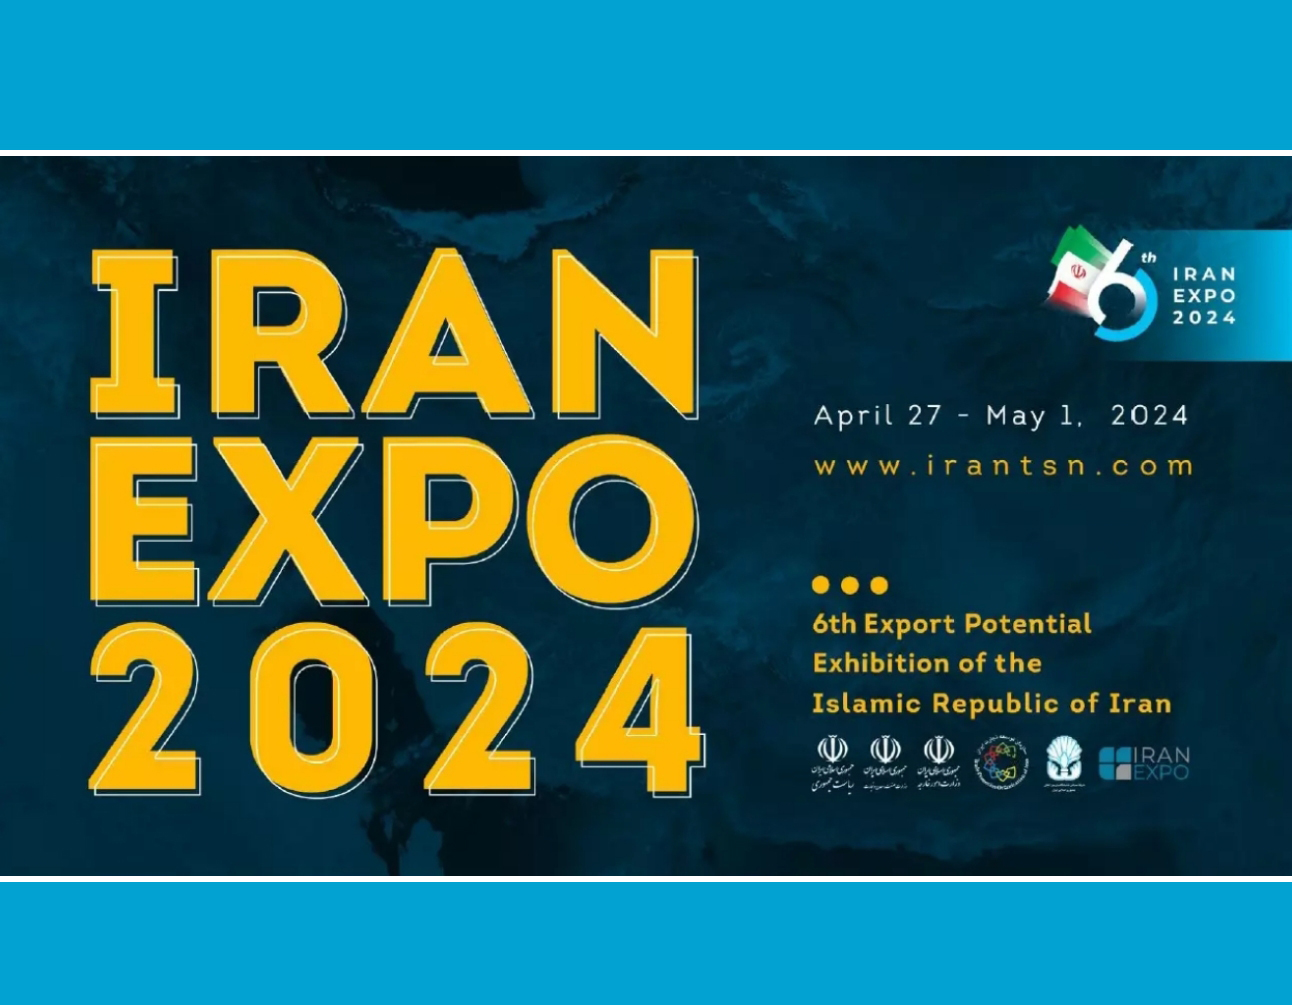 ایران میزبان ۲۲۰۰ مهمان در نمایشگاه اکسپو ۲۰۲۴ است